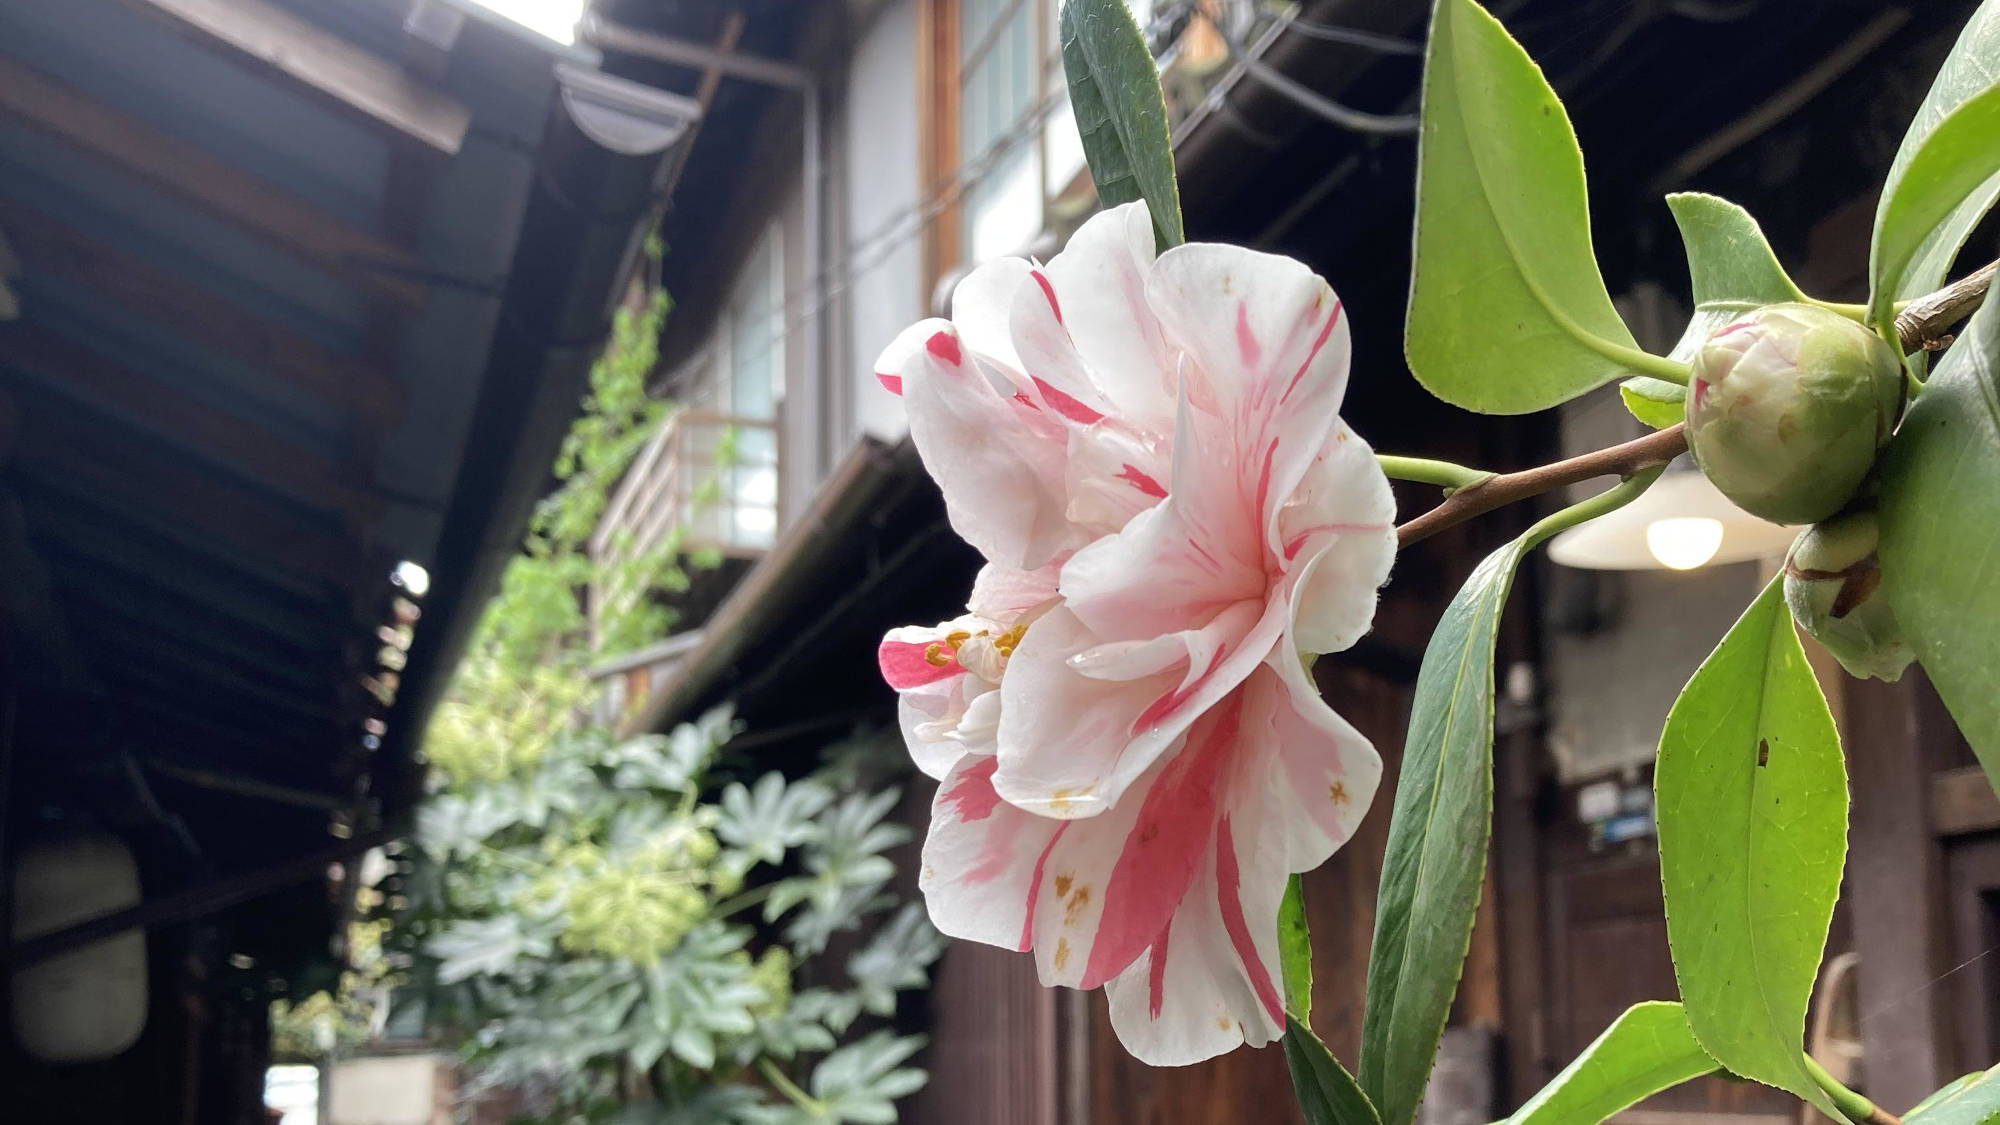 ・【外観】白とピンクの可愛らしい椿。鮮やかな色が京都の街並みに映えます